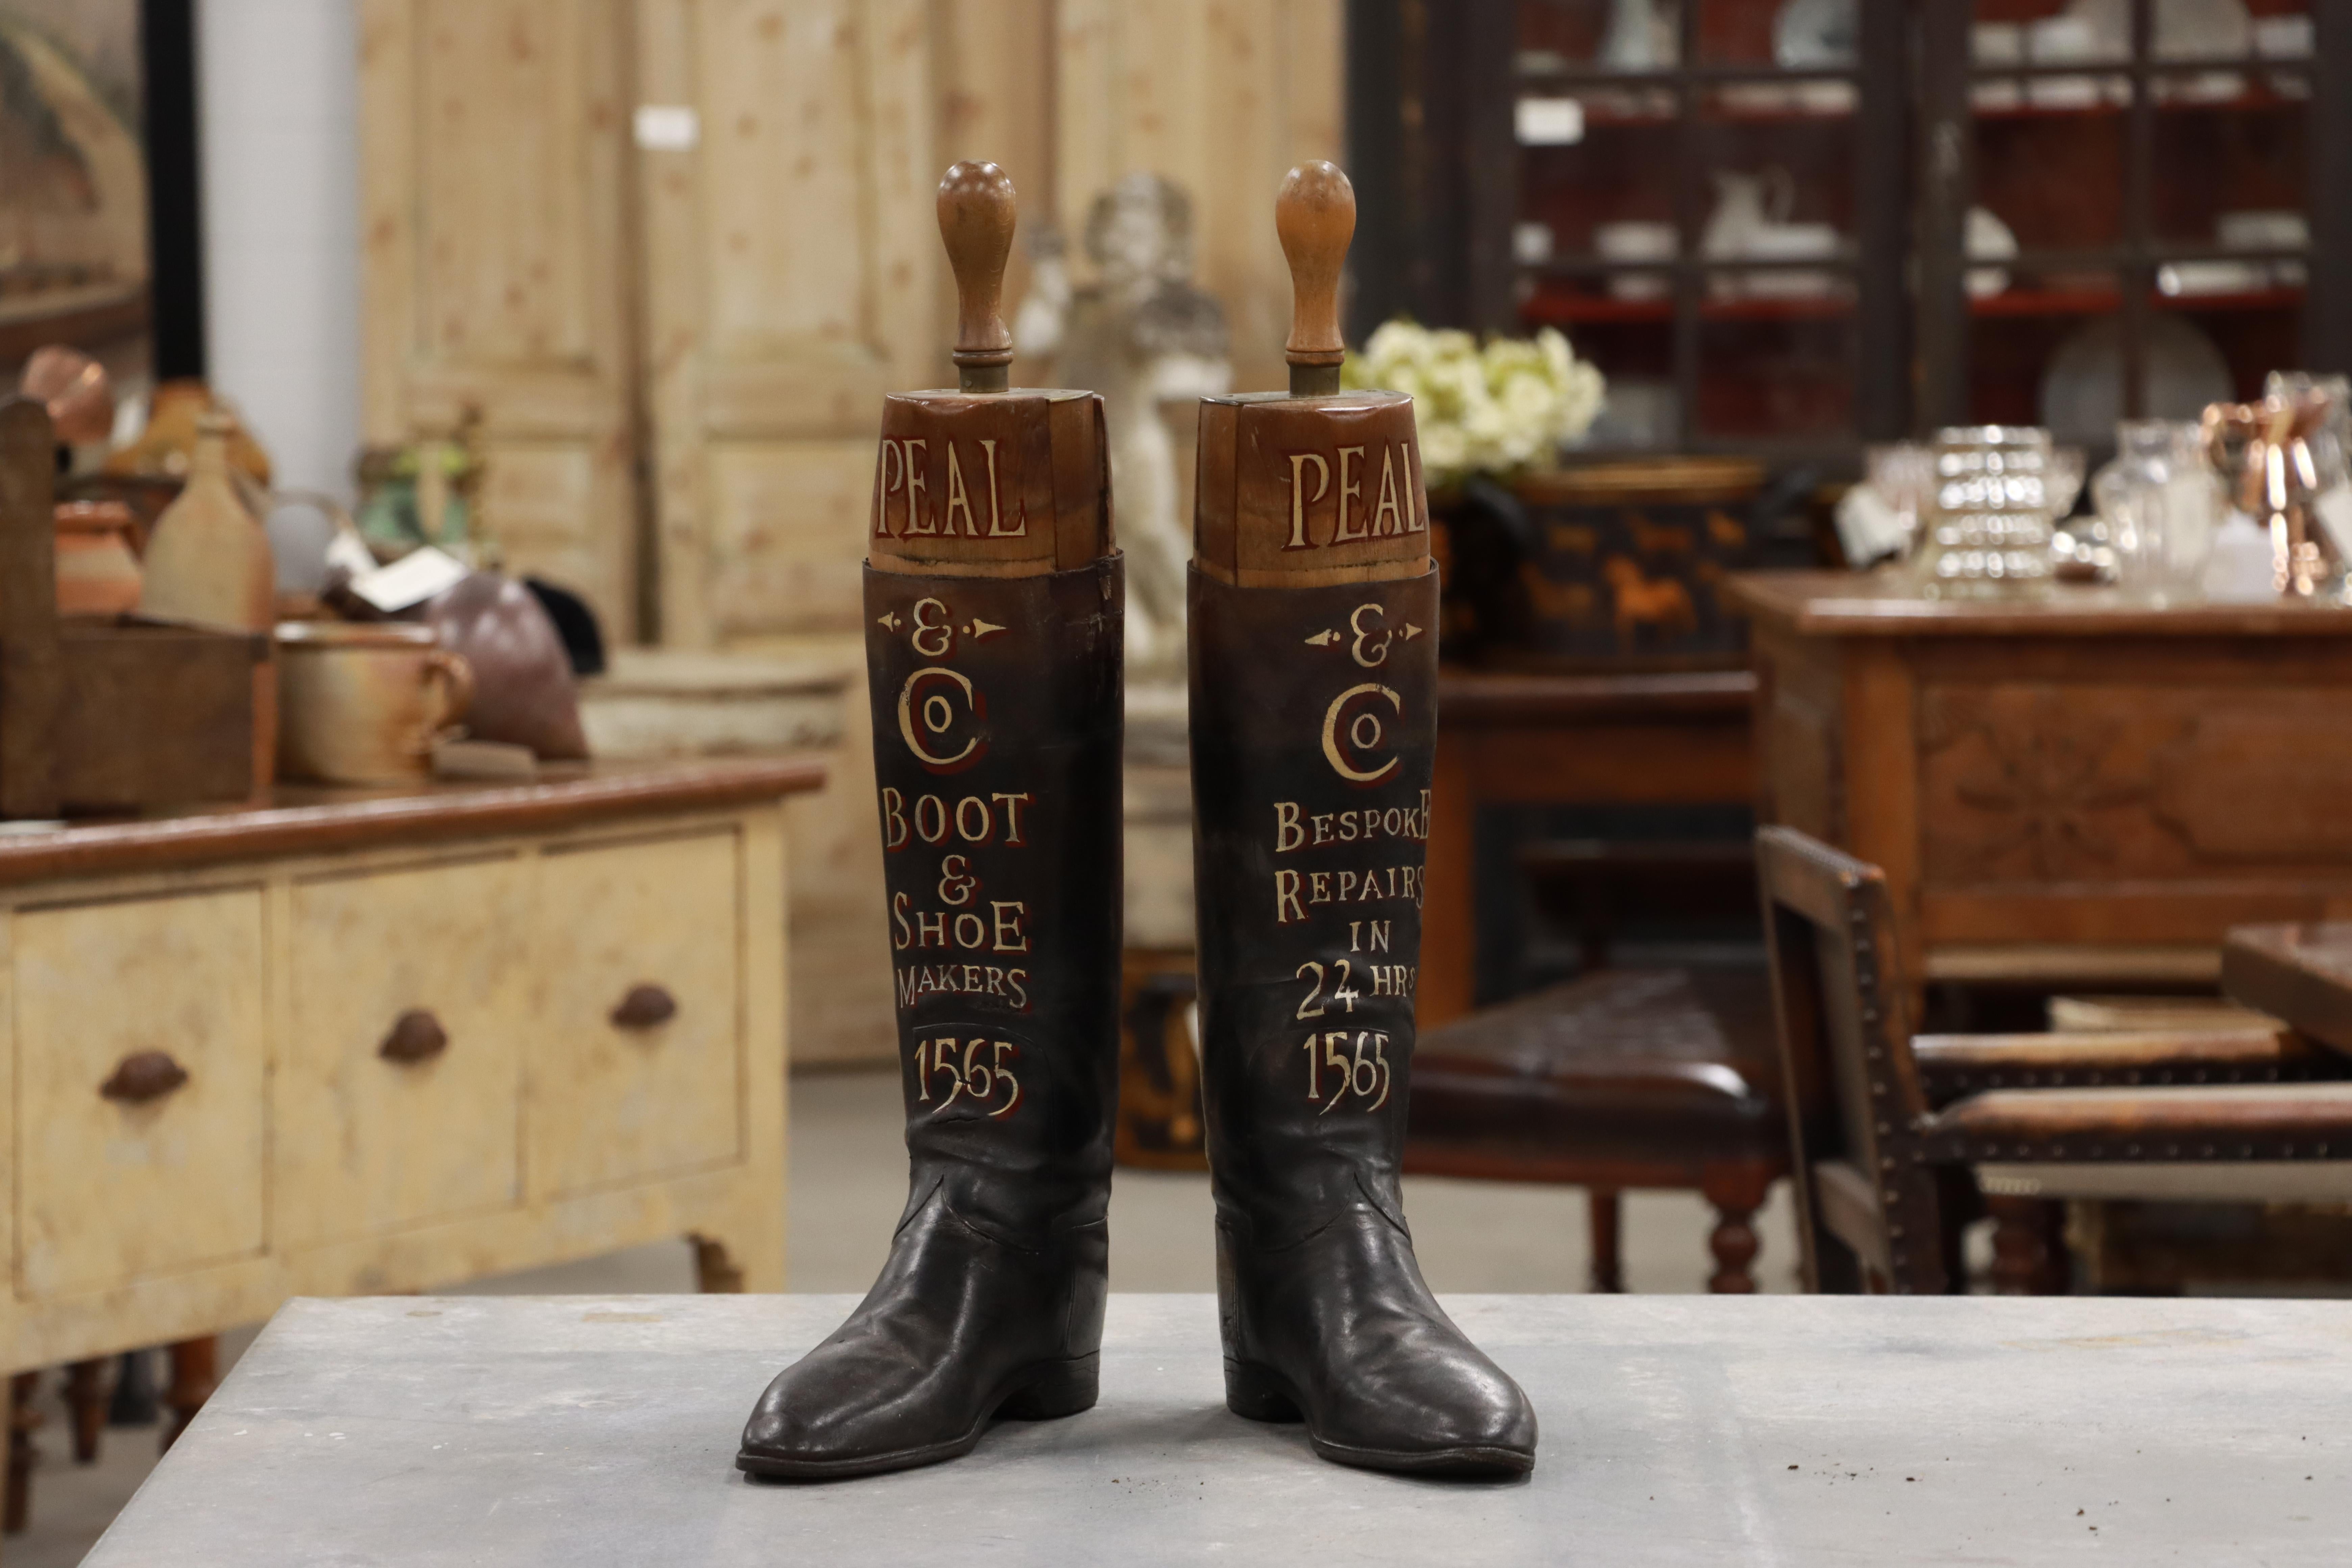 Paire de bottes d'équitation anglaises anciennes en cuir avec leurs arbres d'origine en bois dur. Les deux bottes sont décorées d'un lettrage doré, annonçant Peal & Co. (appliqué plus tard). 

Peal a fabriqué des chaussures et des bottes à Londres